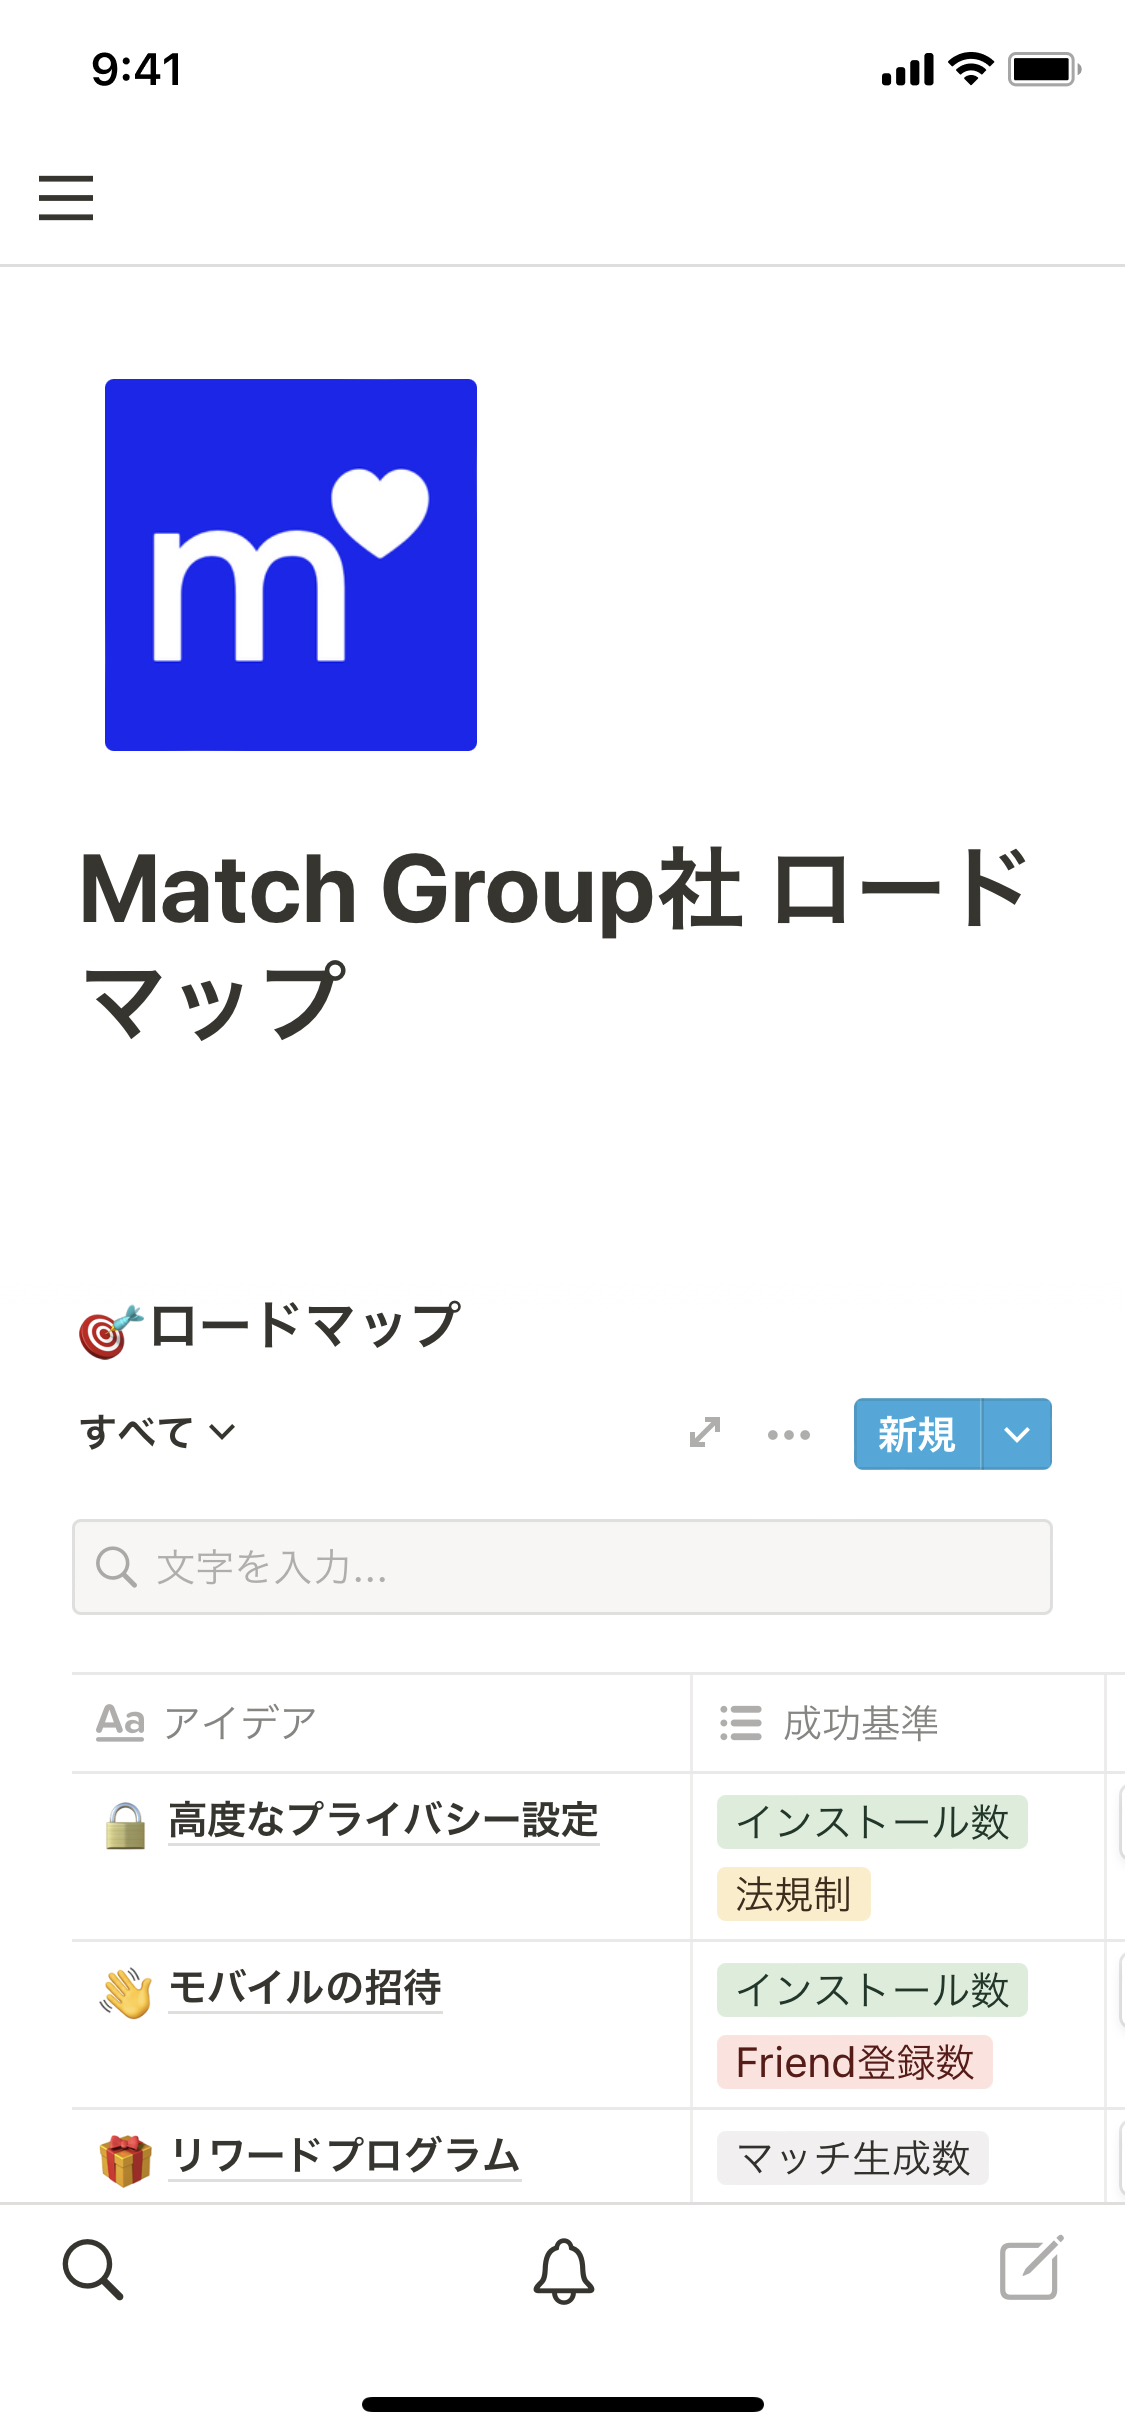 Match Group社 ロードマップテンプレートのモバイル画像